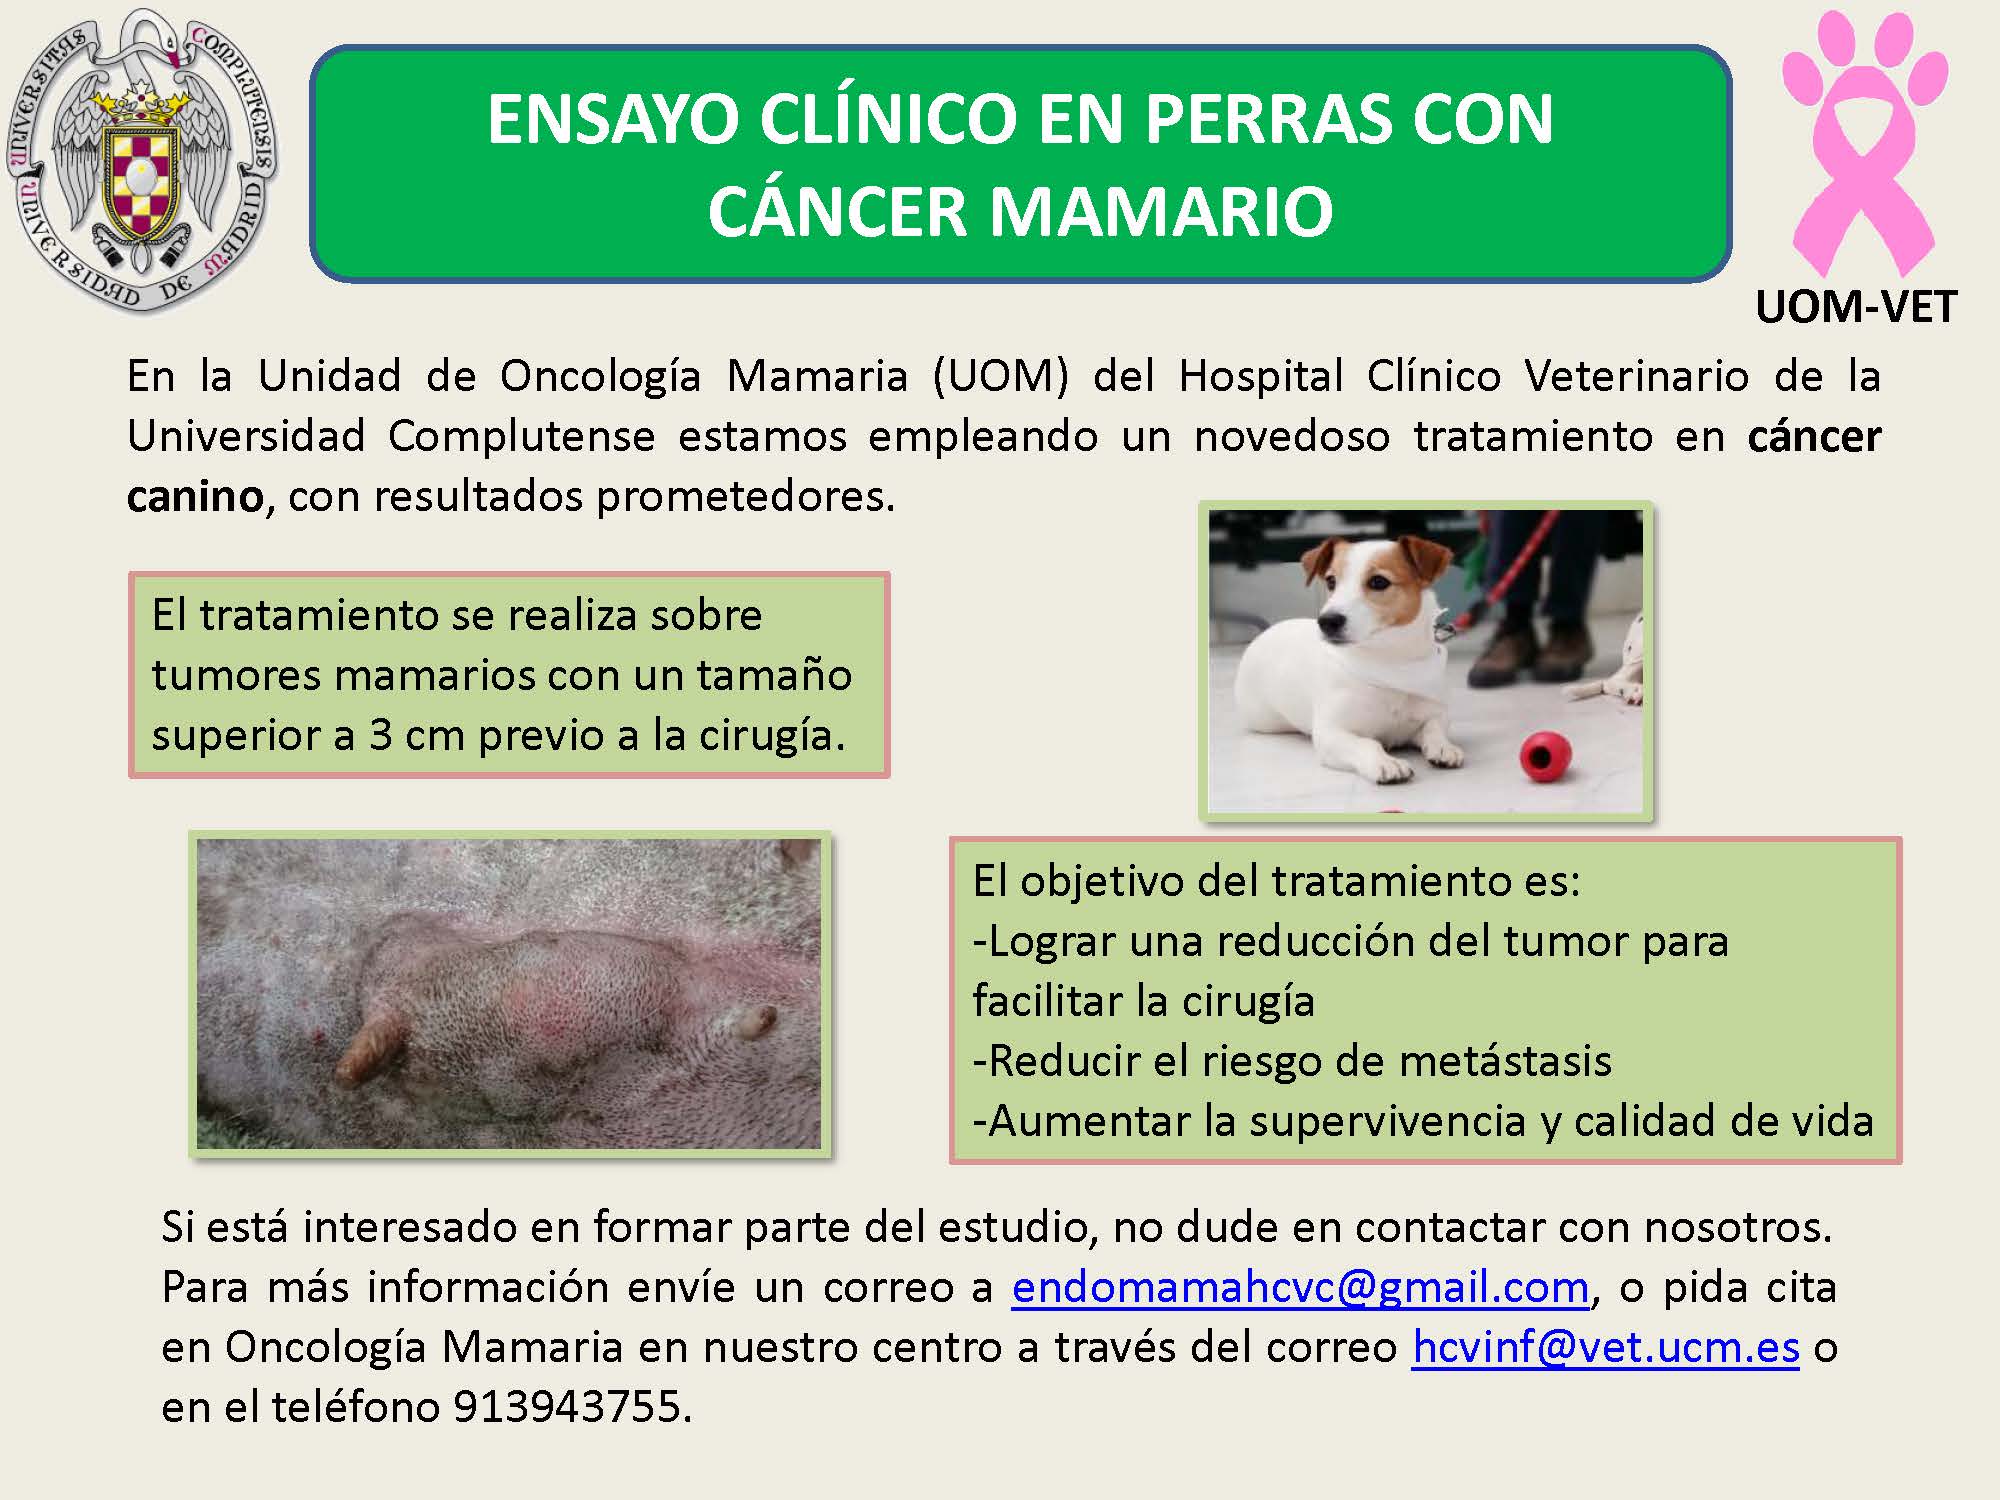 Ensayo clínico en perras con cáncer mamario